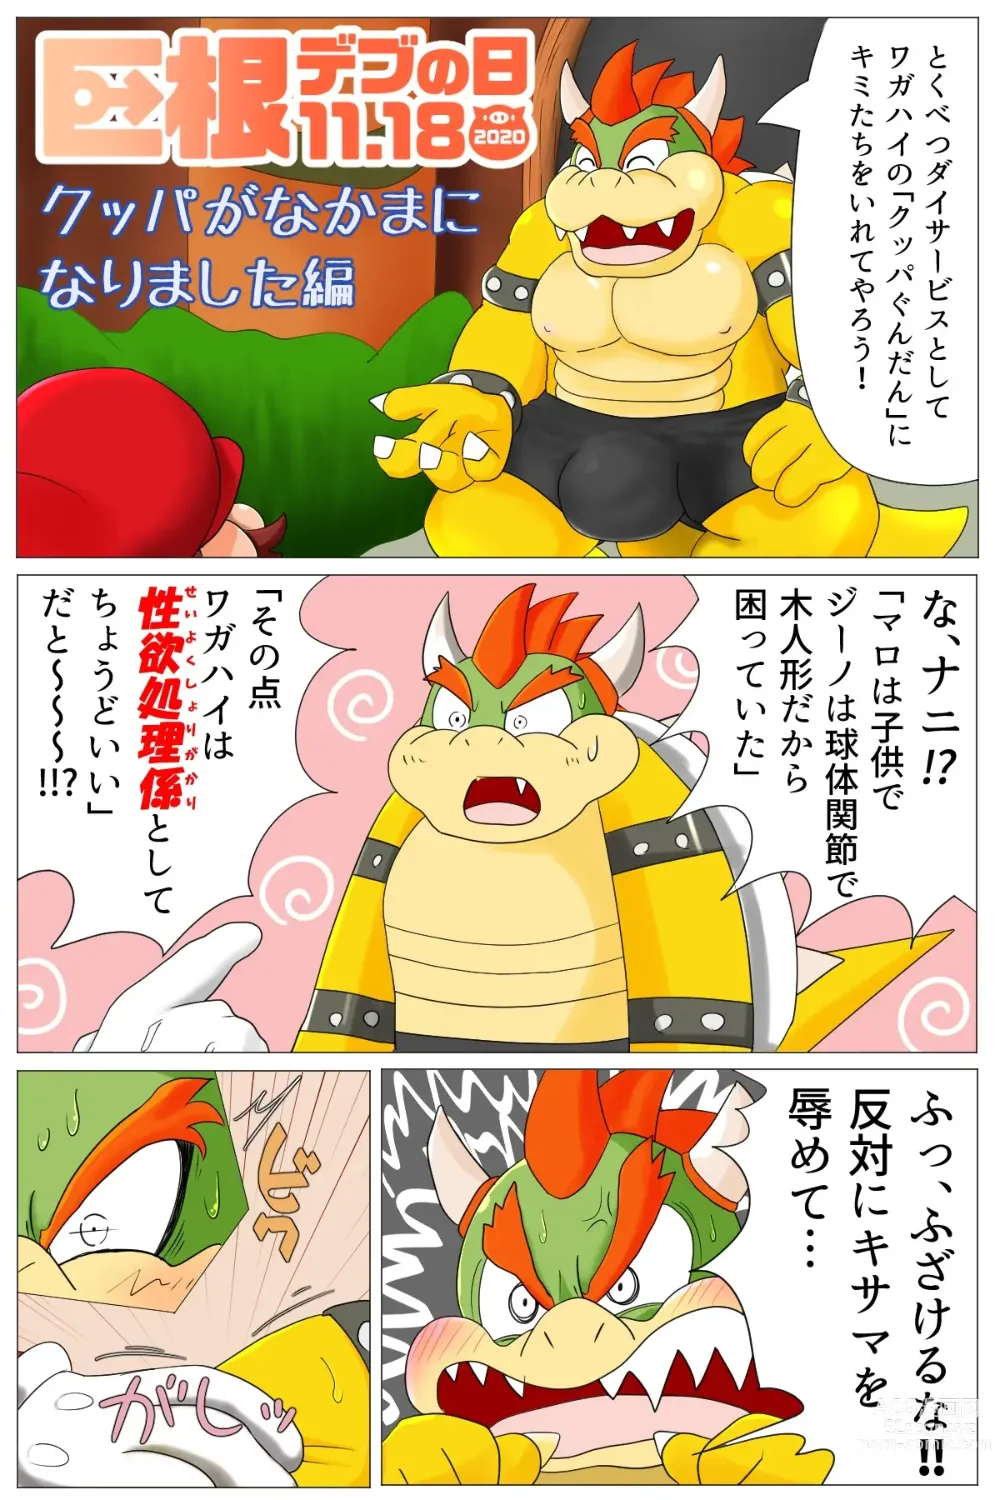 Page 1 of doujinshi <Kyokon Debu no Hi> Bowser Has Joined the Party